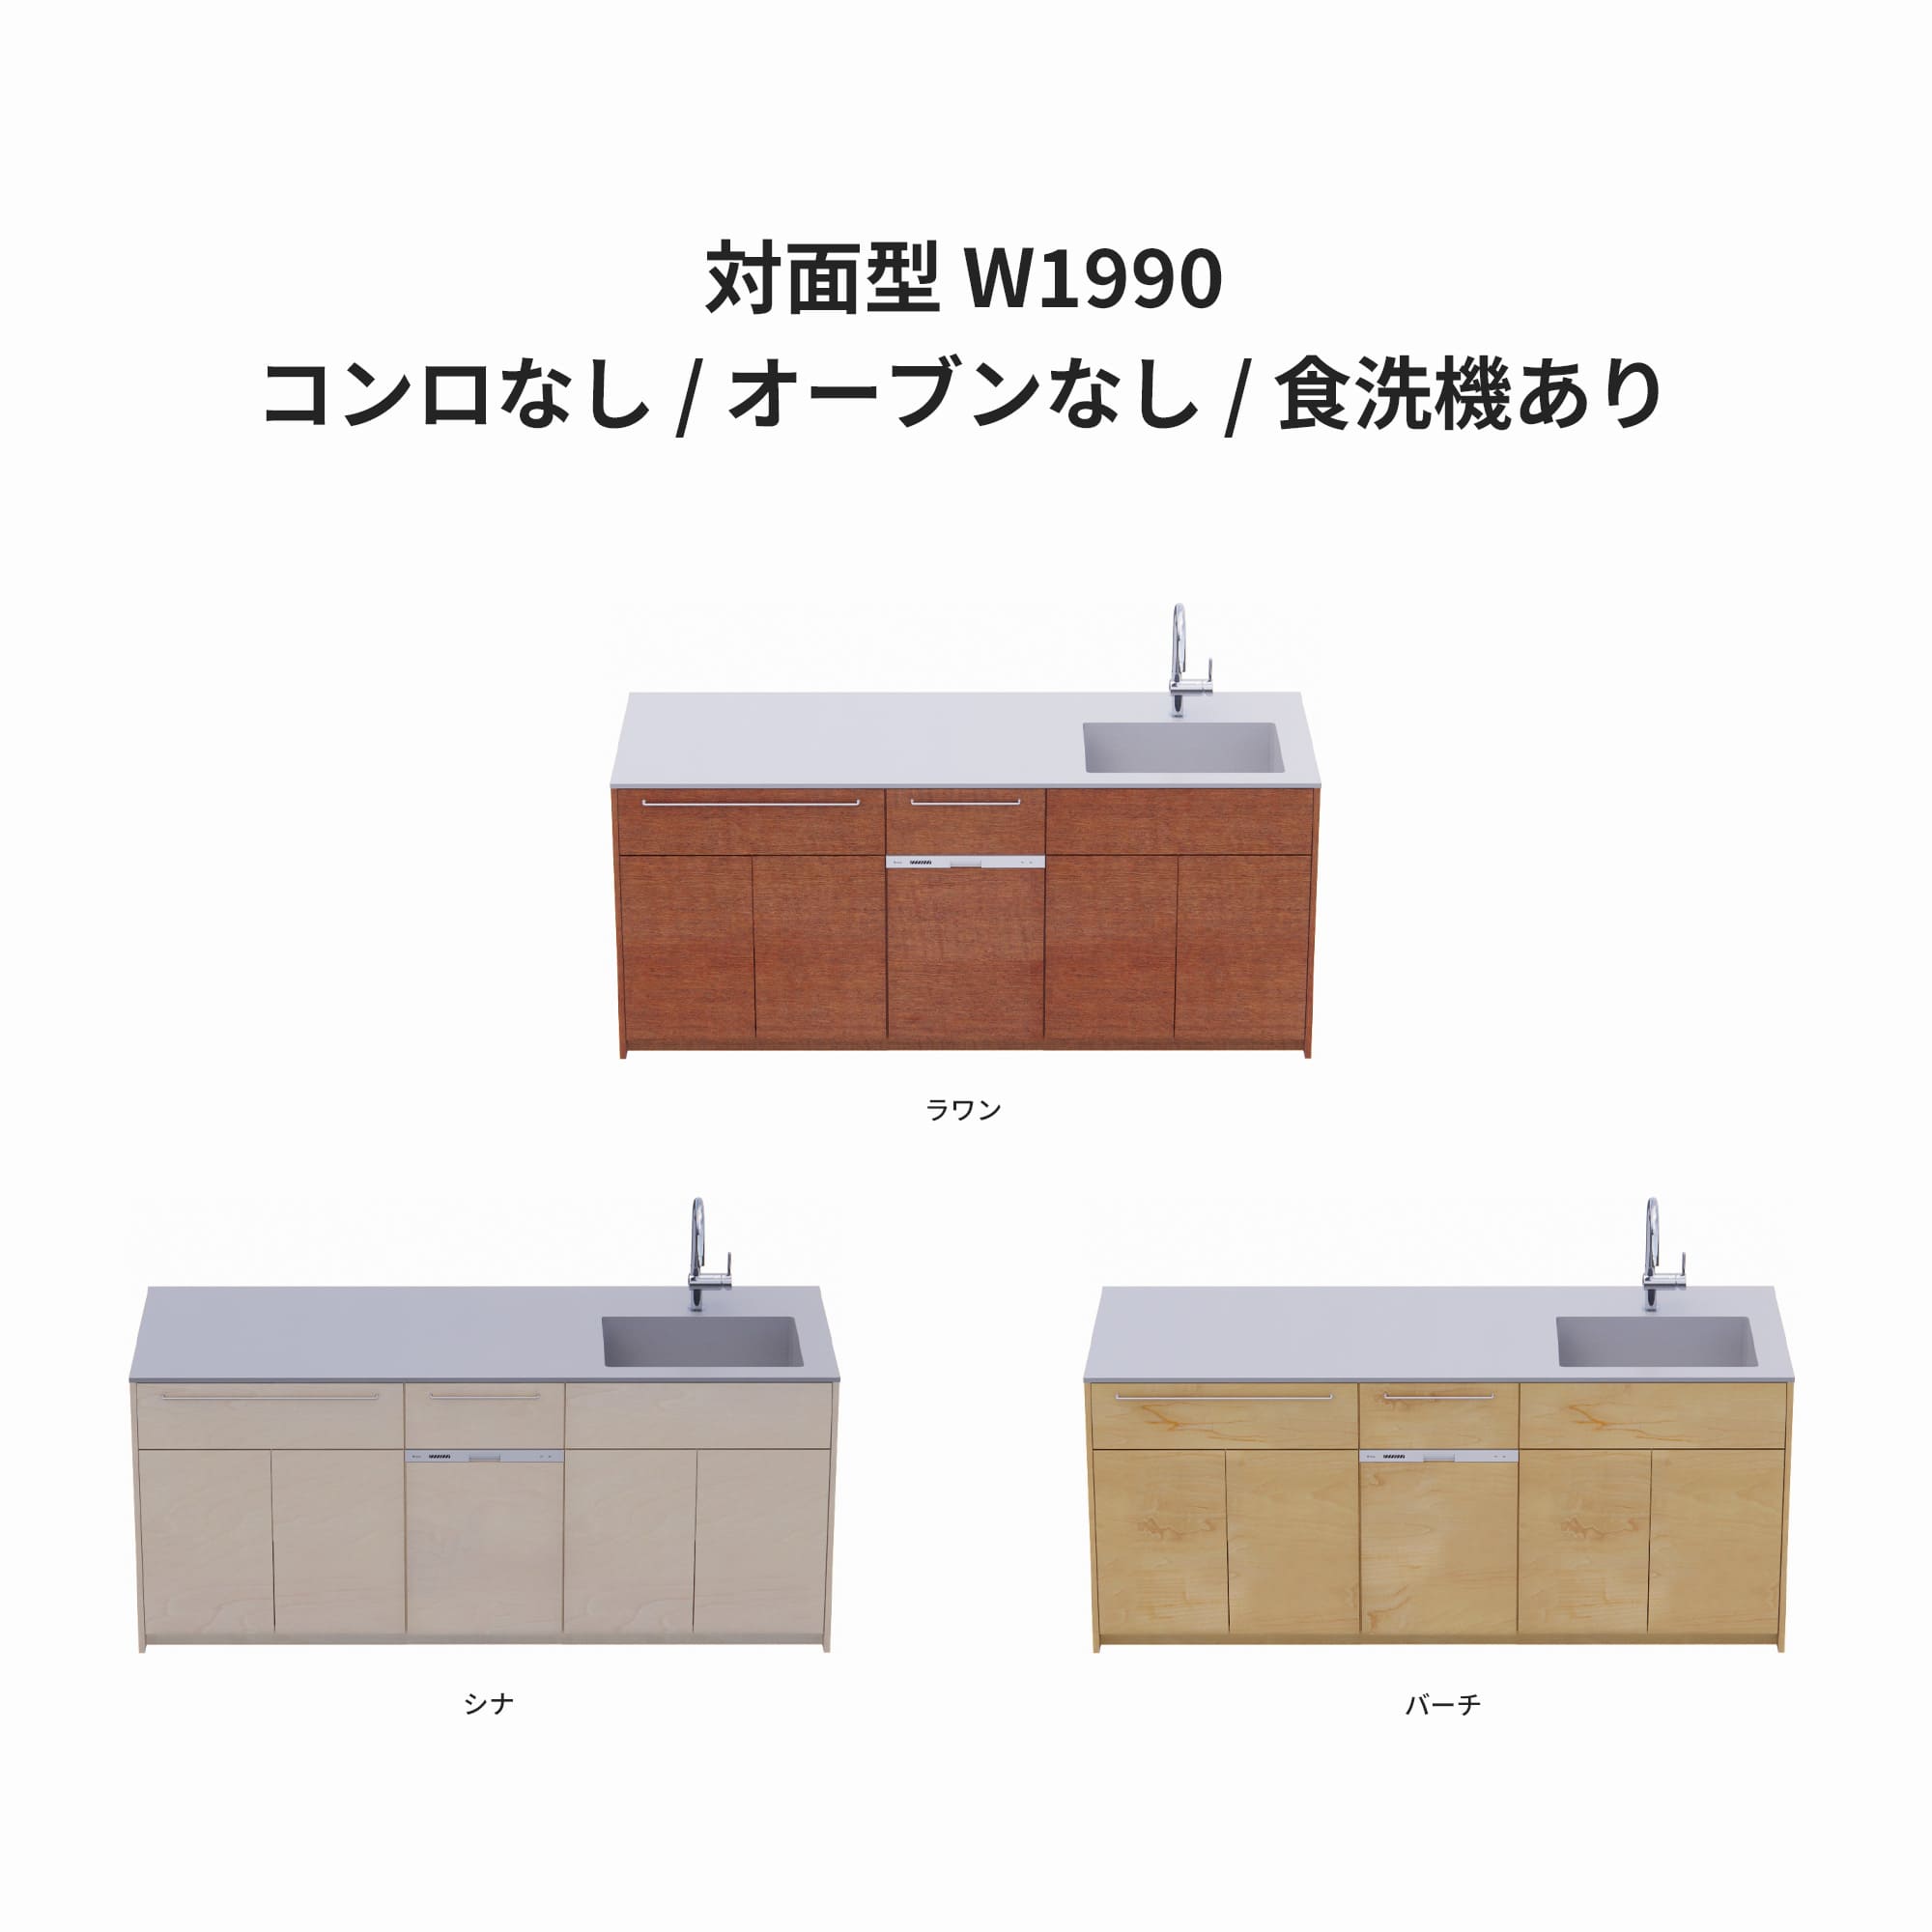 木製システムキッチン 対面型 W1990・コンロなし / オーブンなし / 食洗機あり KB-KC022-34-G183 ラワン・シナ・バーチが選択できます